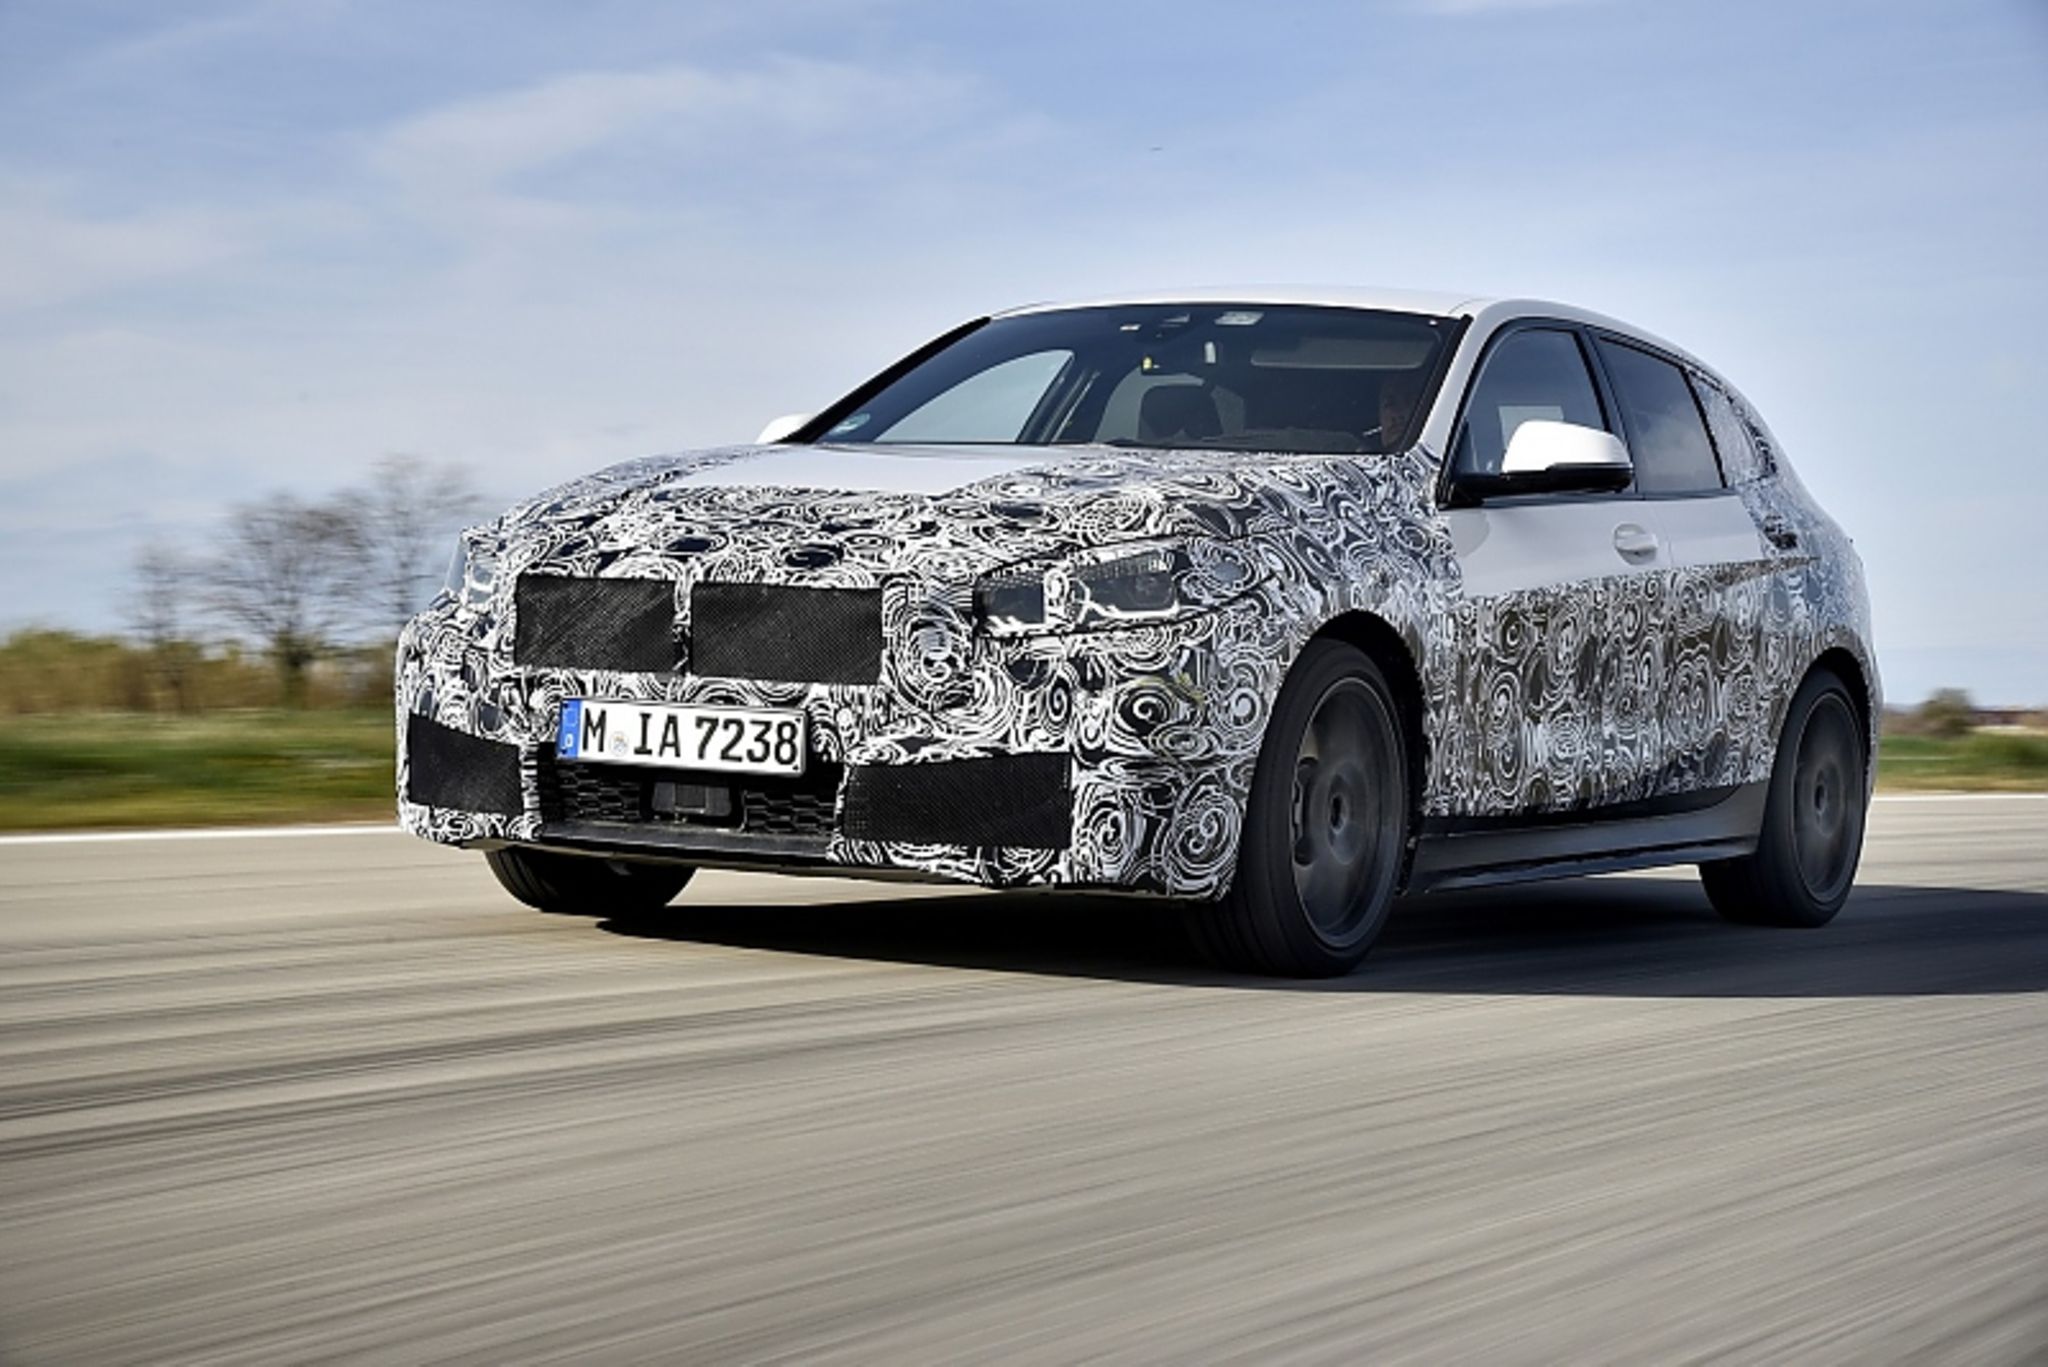 BMW 118i im Fahrbericht: Hinterradantrieb auf Abschiedstour